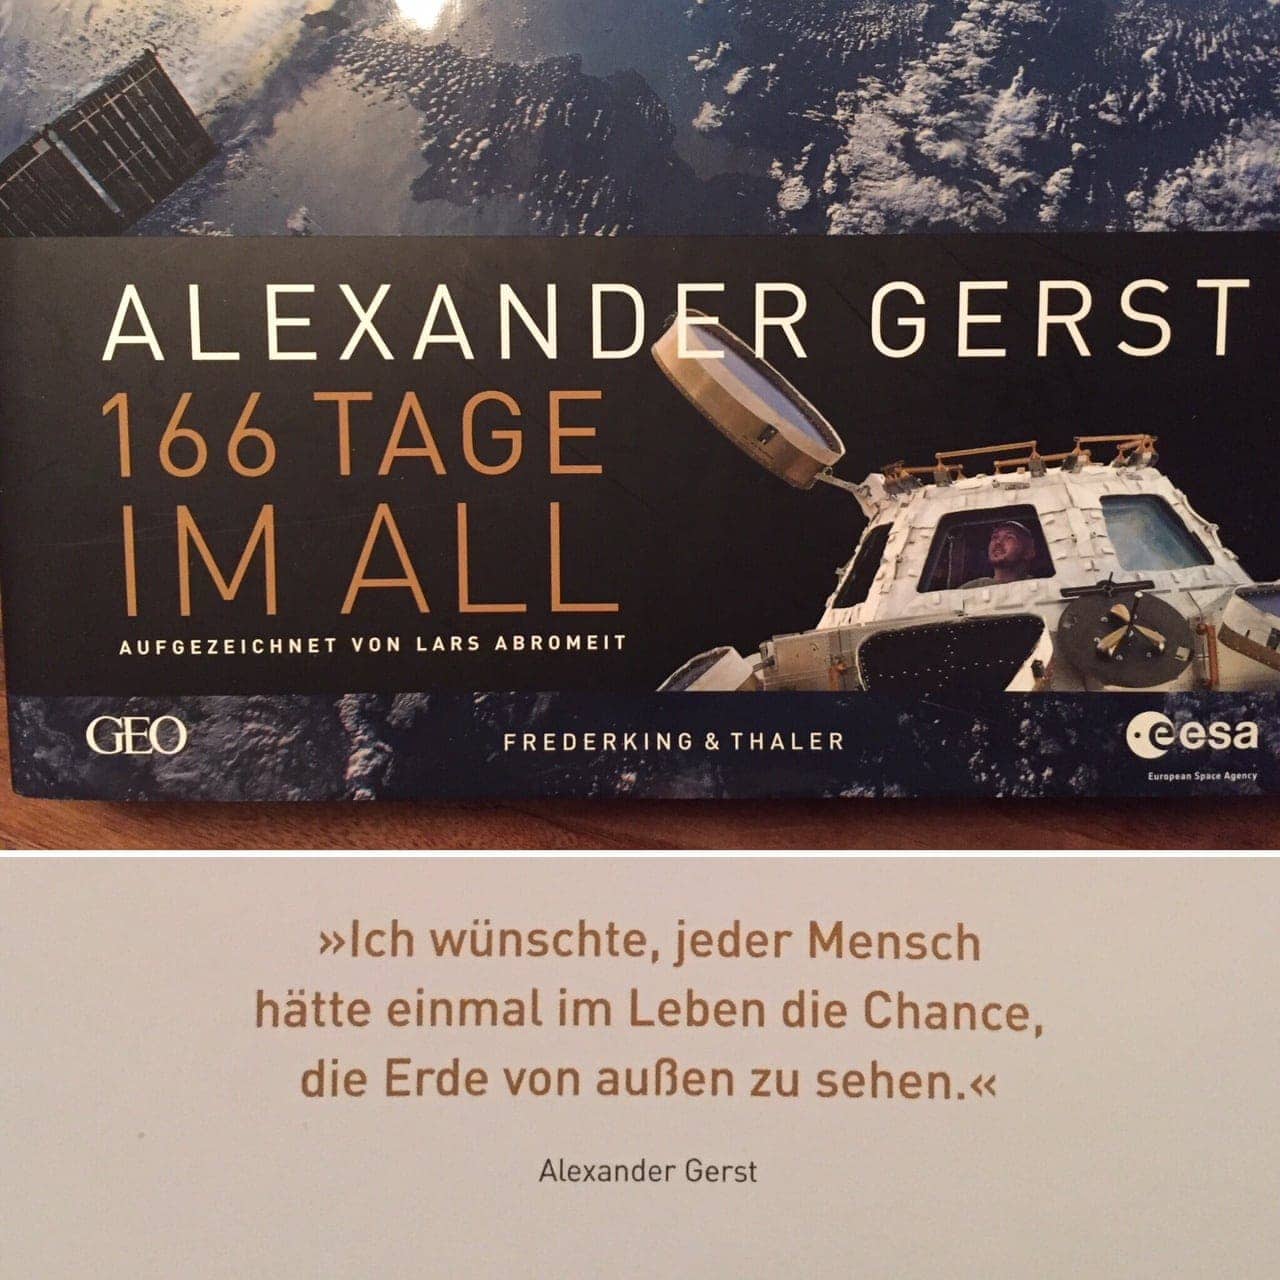 Auf dem Bild ist das Cover von "166 Tage im All" und ein wichtiger Satz von Alexander Gerst zu sehen: "Ich wünschte, jeder Mensch hätte einmal im Leben die Chance, die Erde von außen zu sehen."